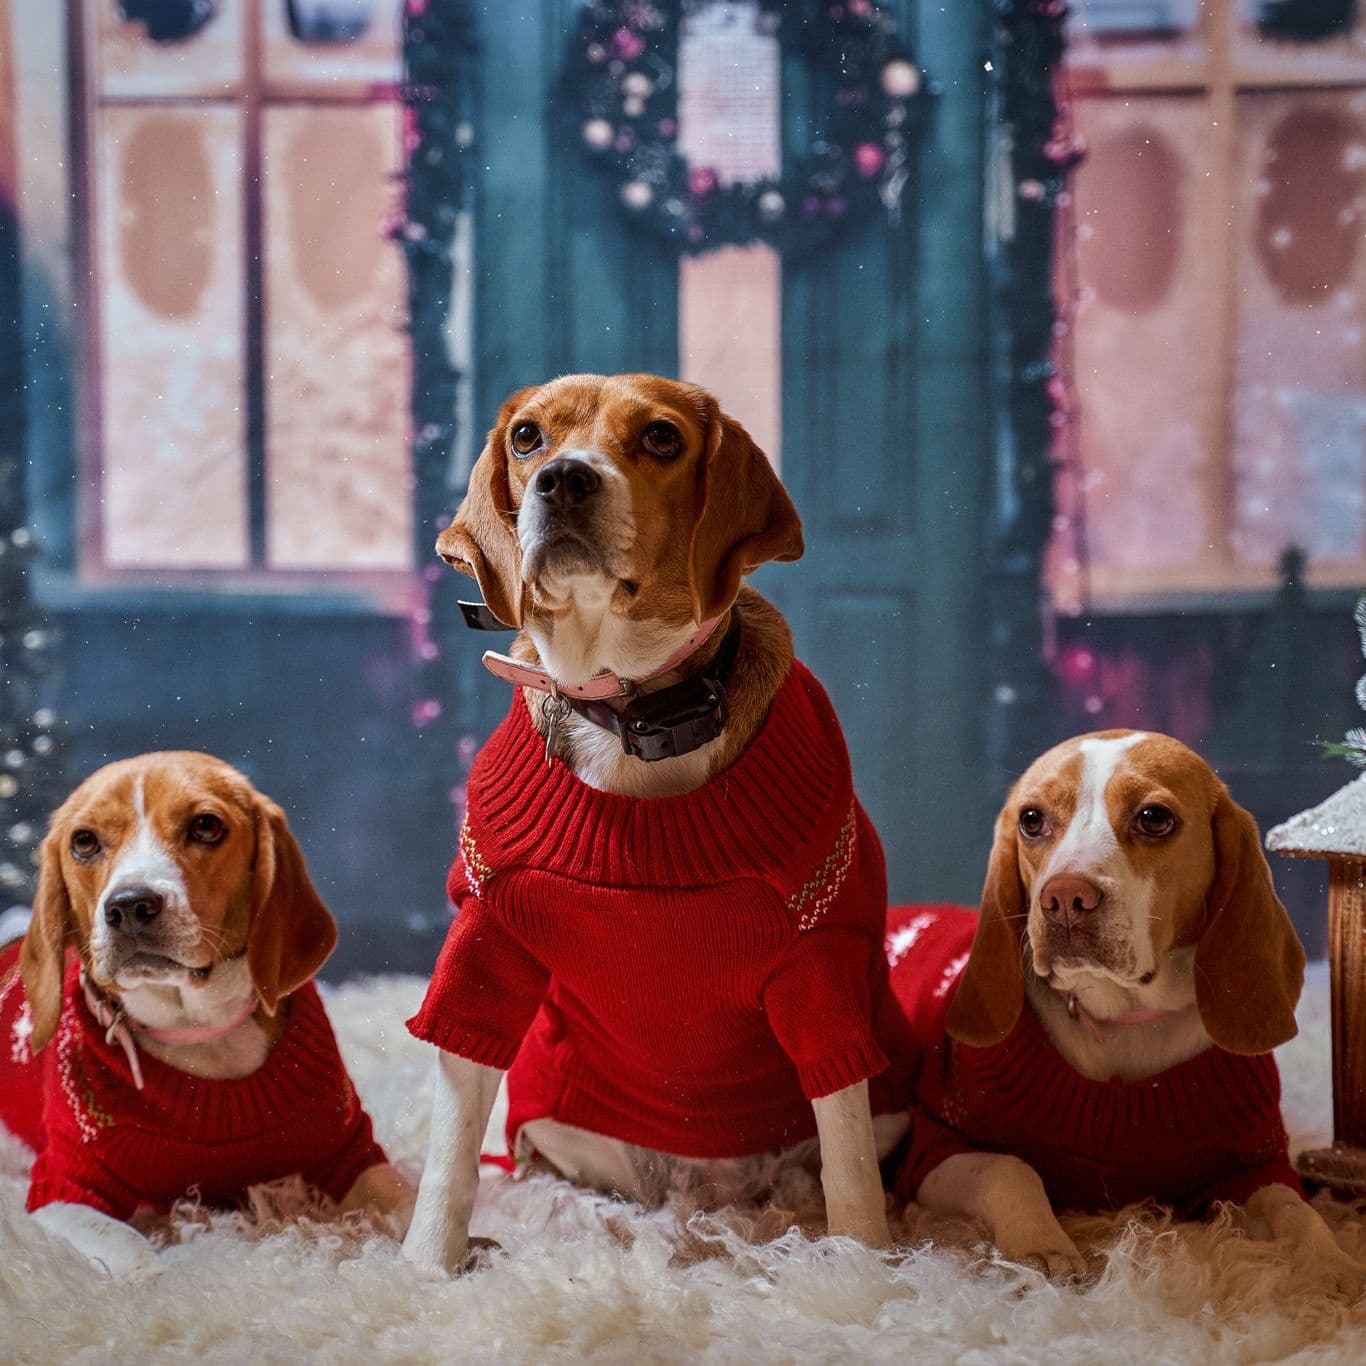 كلاب دييجو جوتا مزينه احتفالا بعيد الميلاد